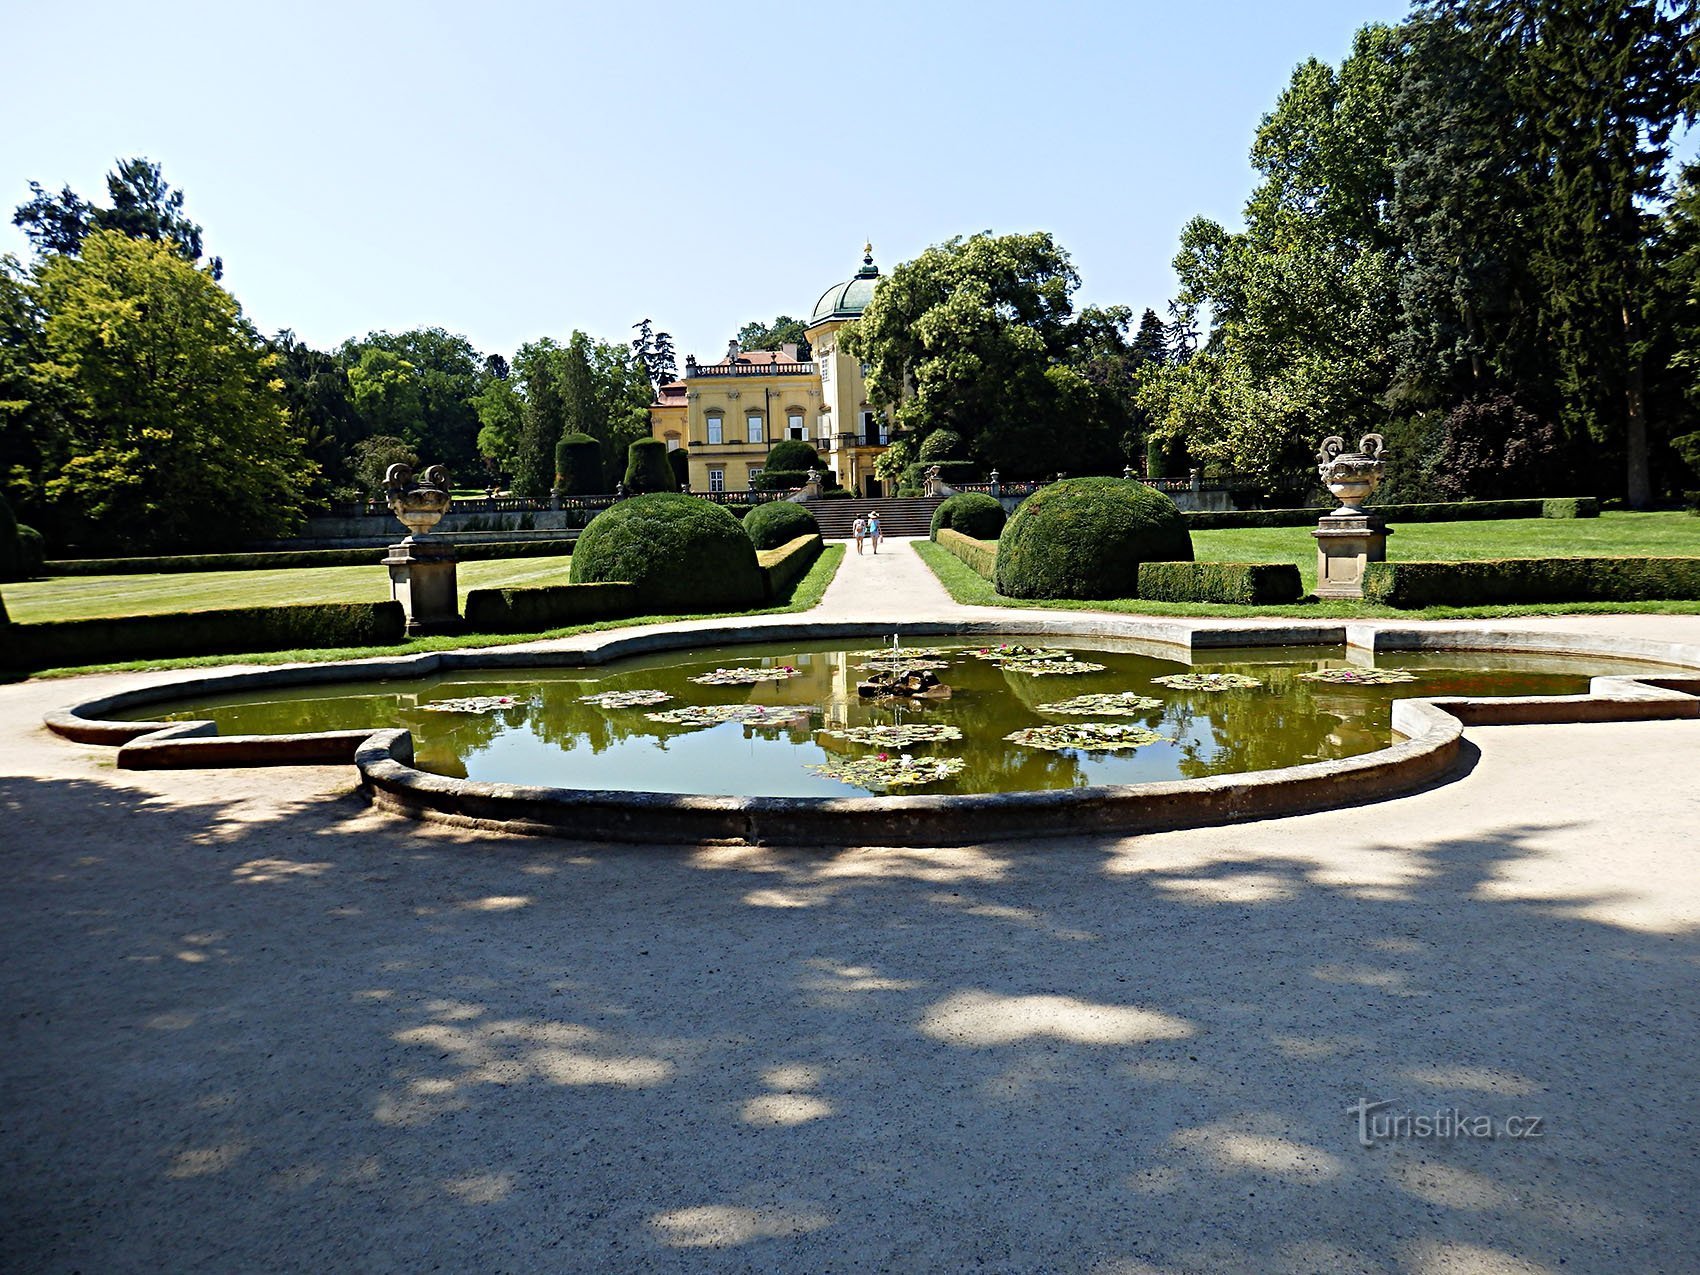 khu vực công viên lâu đài và khu vườn ở Buchlovice là một trong những khu vực quan trọng nhất và đẹp nhất